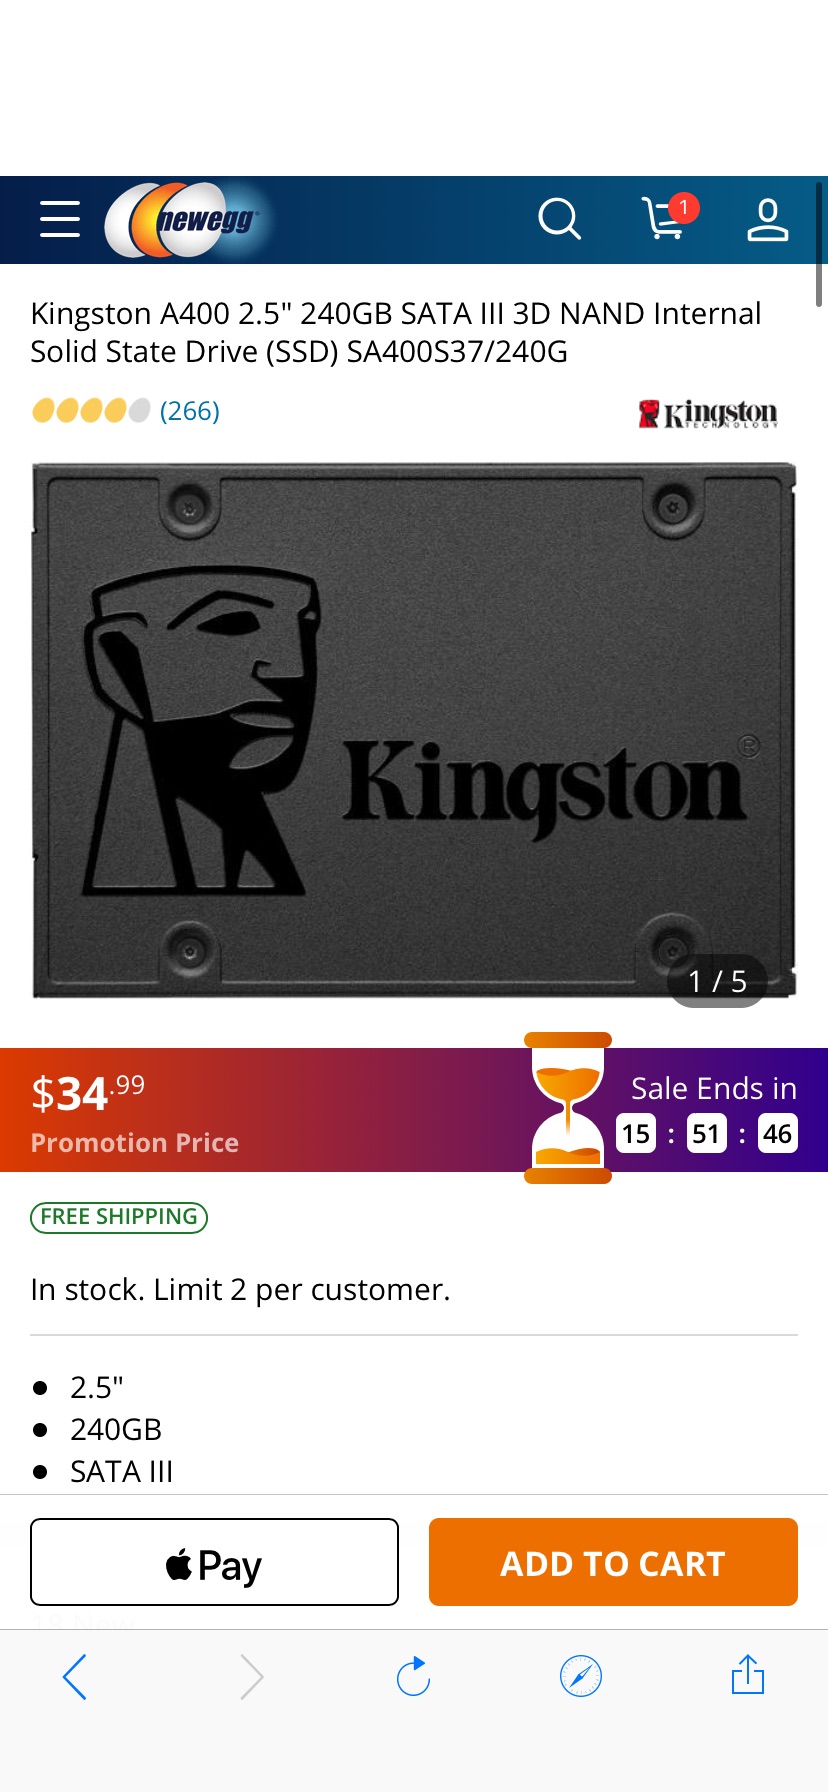 Kingston A400 2.5" 240GB SATA III 3D NAND Internal Solid State Drive (SSD) SA400S37/240G Internal SSDs 硬盘